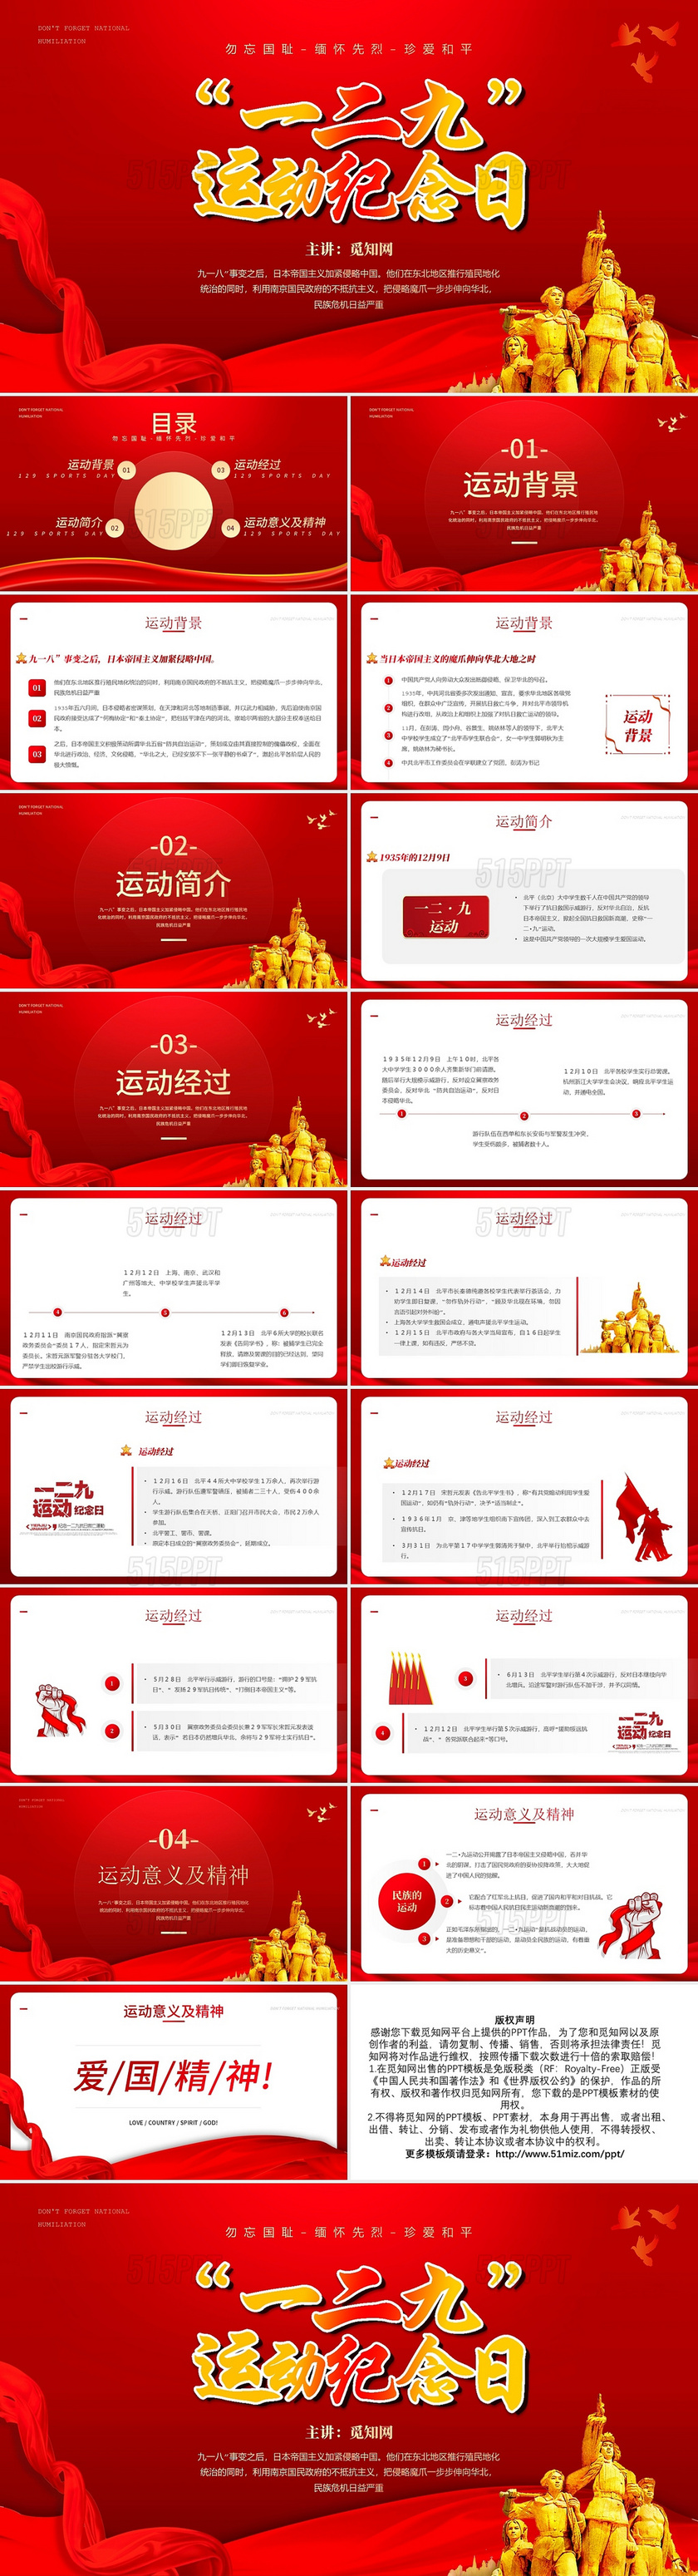 红色卡通一二九运动节日庆典PPT模板